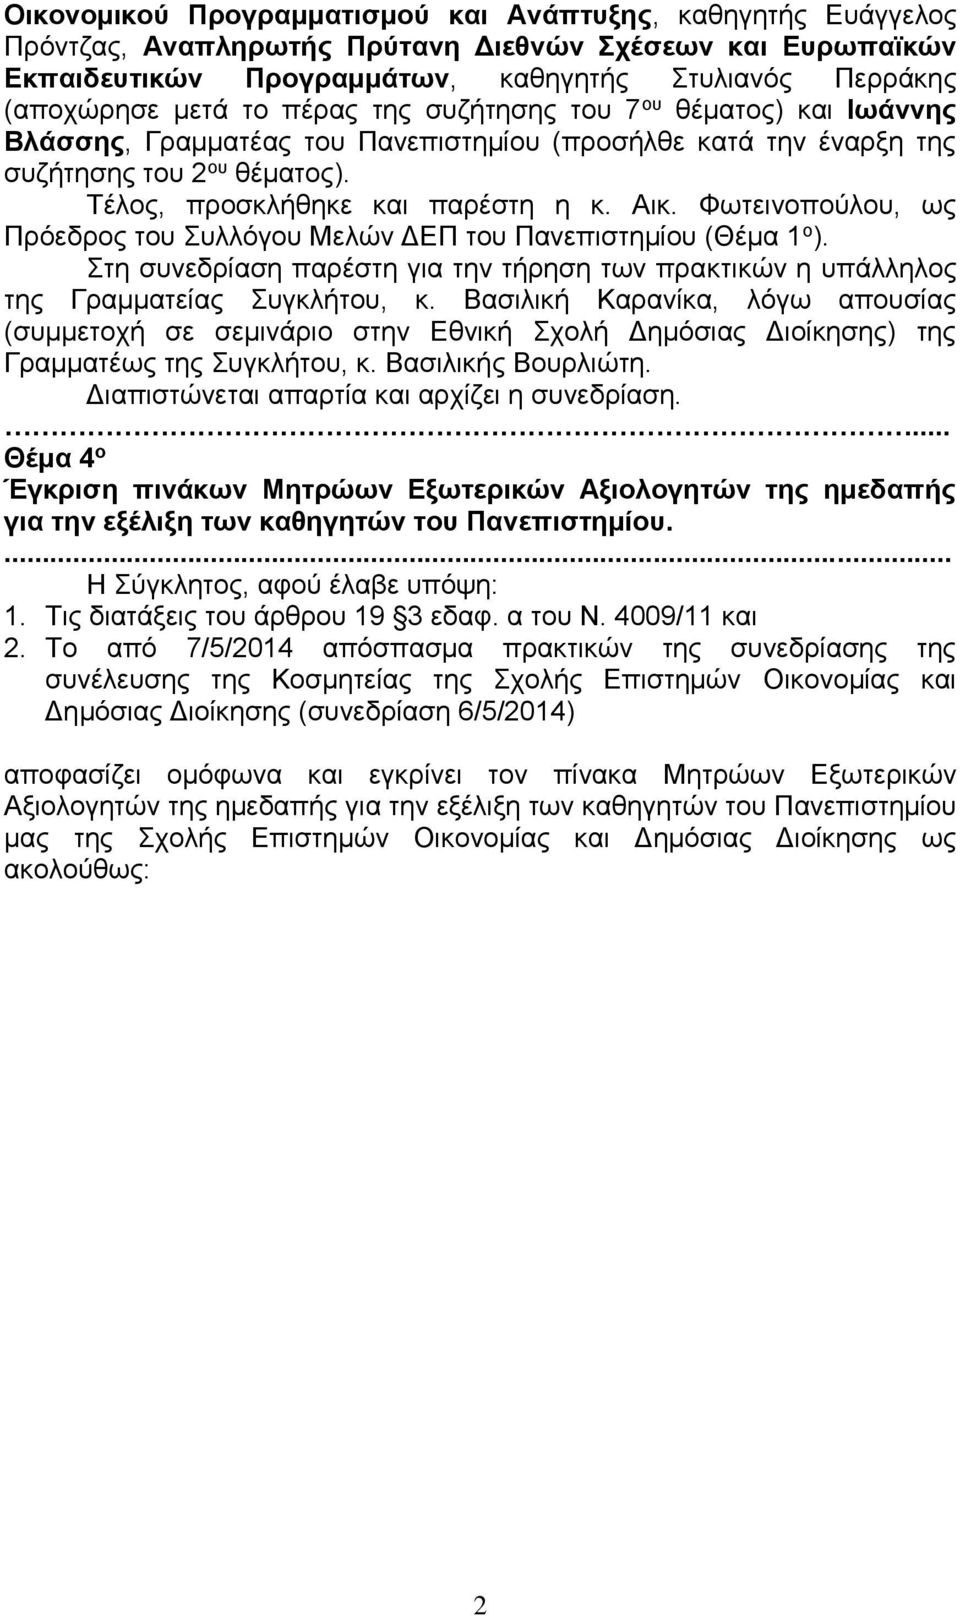 Φωτεινοπούλου, ως Πρόεδρος του υλλόγου Μελών ΔΕΠ του Πανεπιστημίου (Θέμα 1 ο ). τη συνεδρίαση παρέστη για την τήρηση των πρακτικών η υπάλληλος της Γραμματείας υγκλήτου, κ.